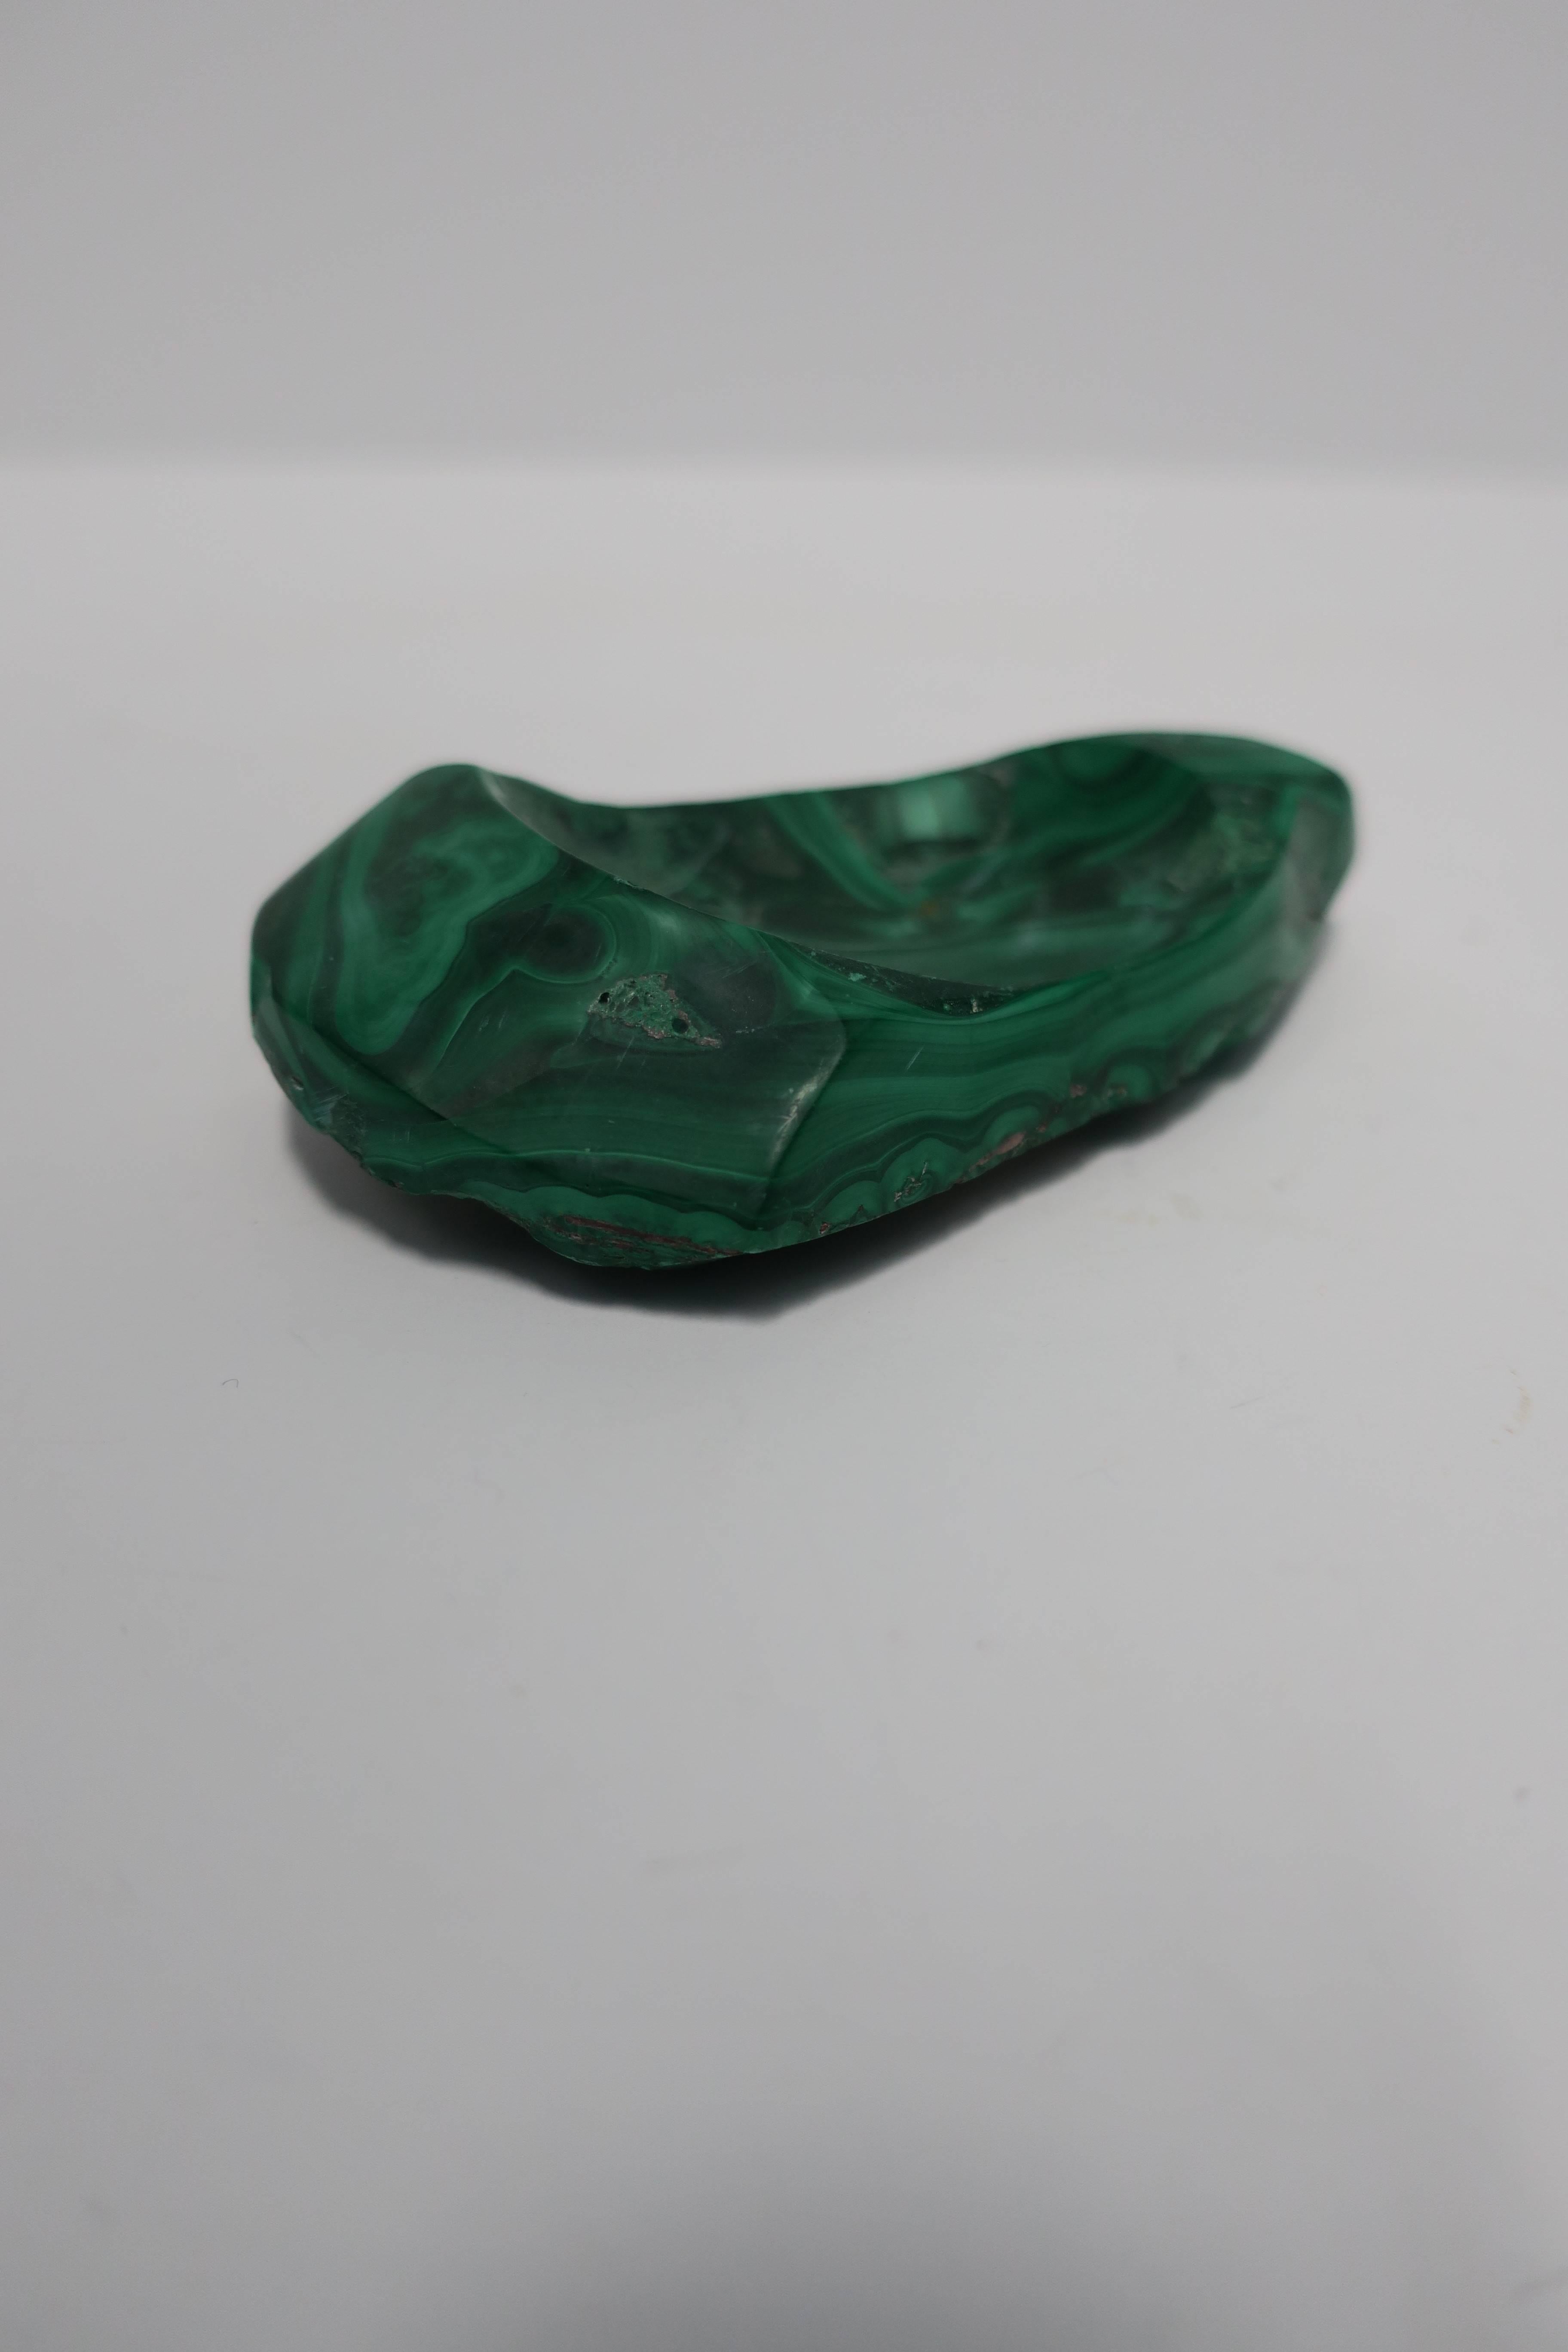 Green Malachite Desk Vessel or Jewelry Dish 7